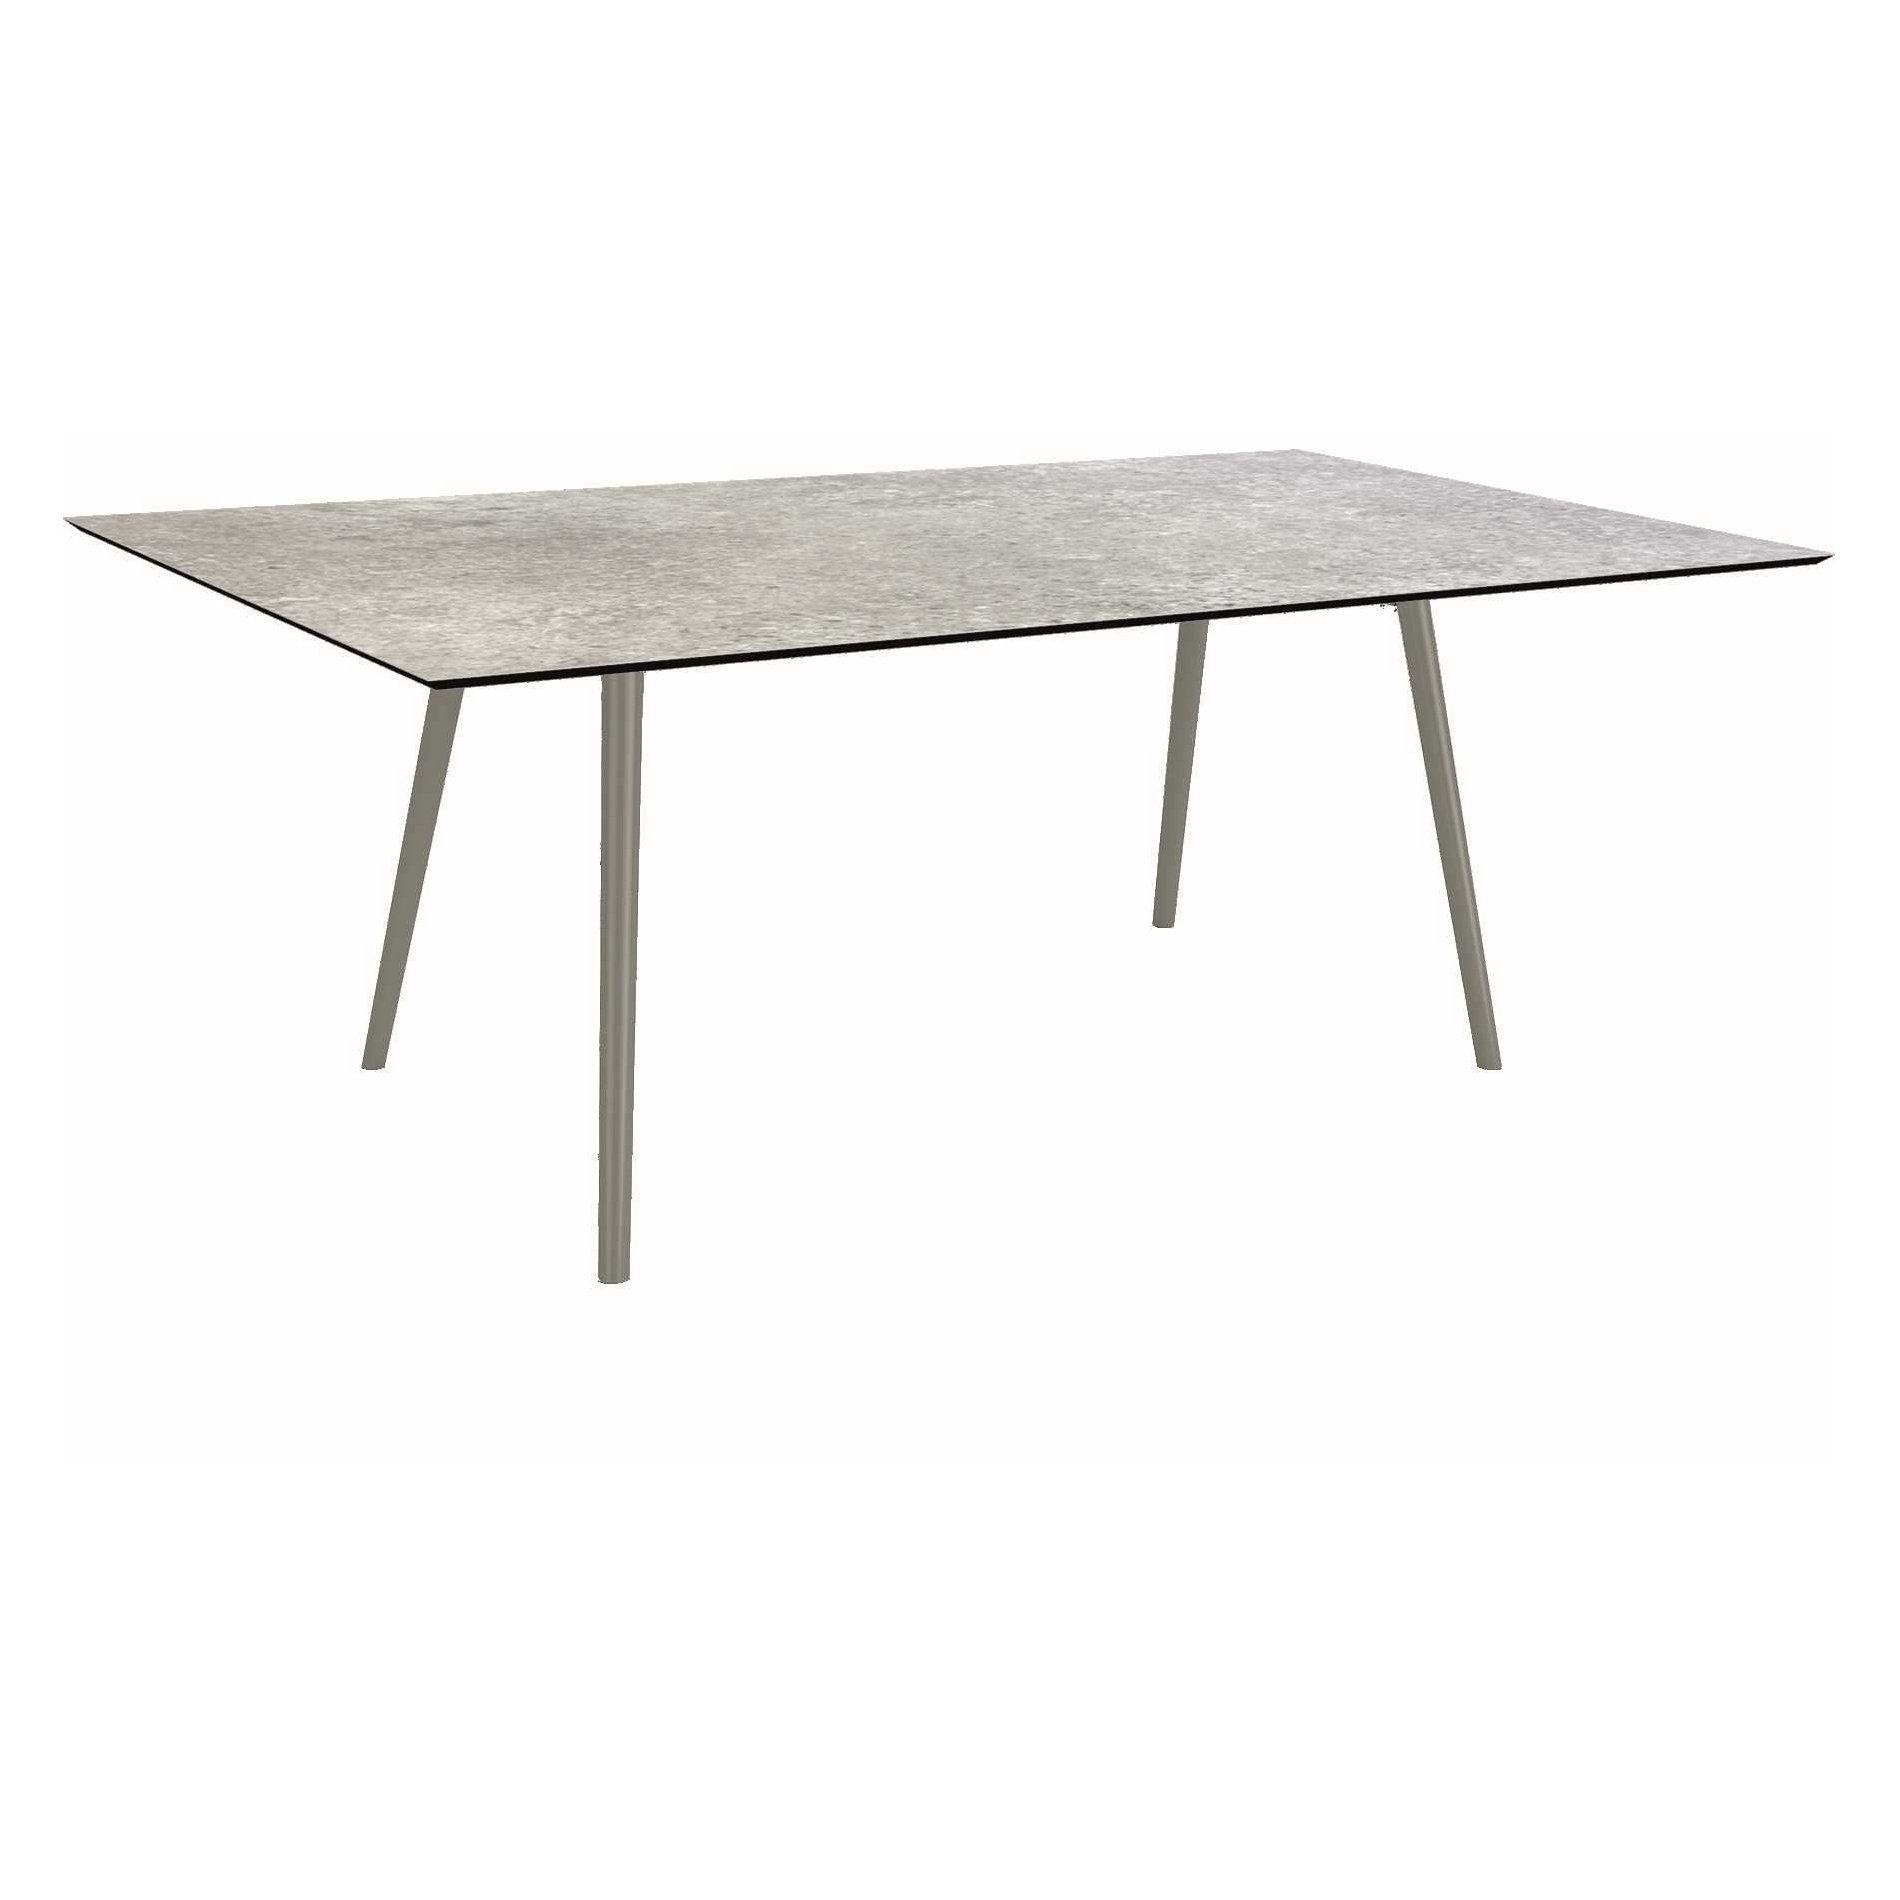 Stern Tisch "Interno", Größe 180x100cm, Alu graphit, Rundrohr, Tischplatte HPL Vintage Stone